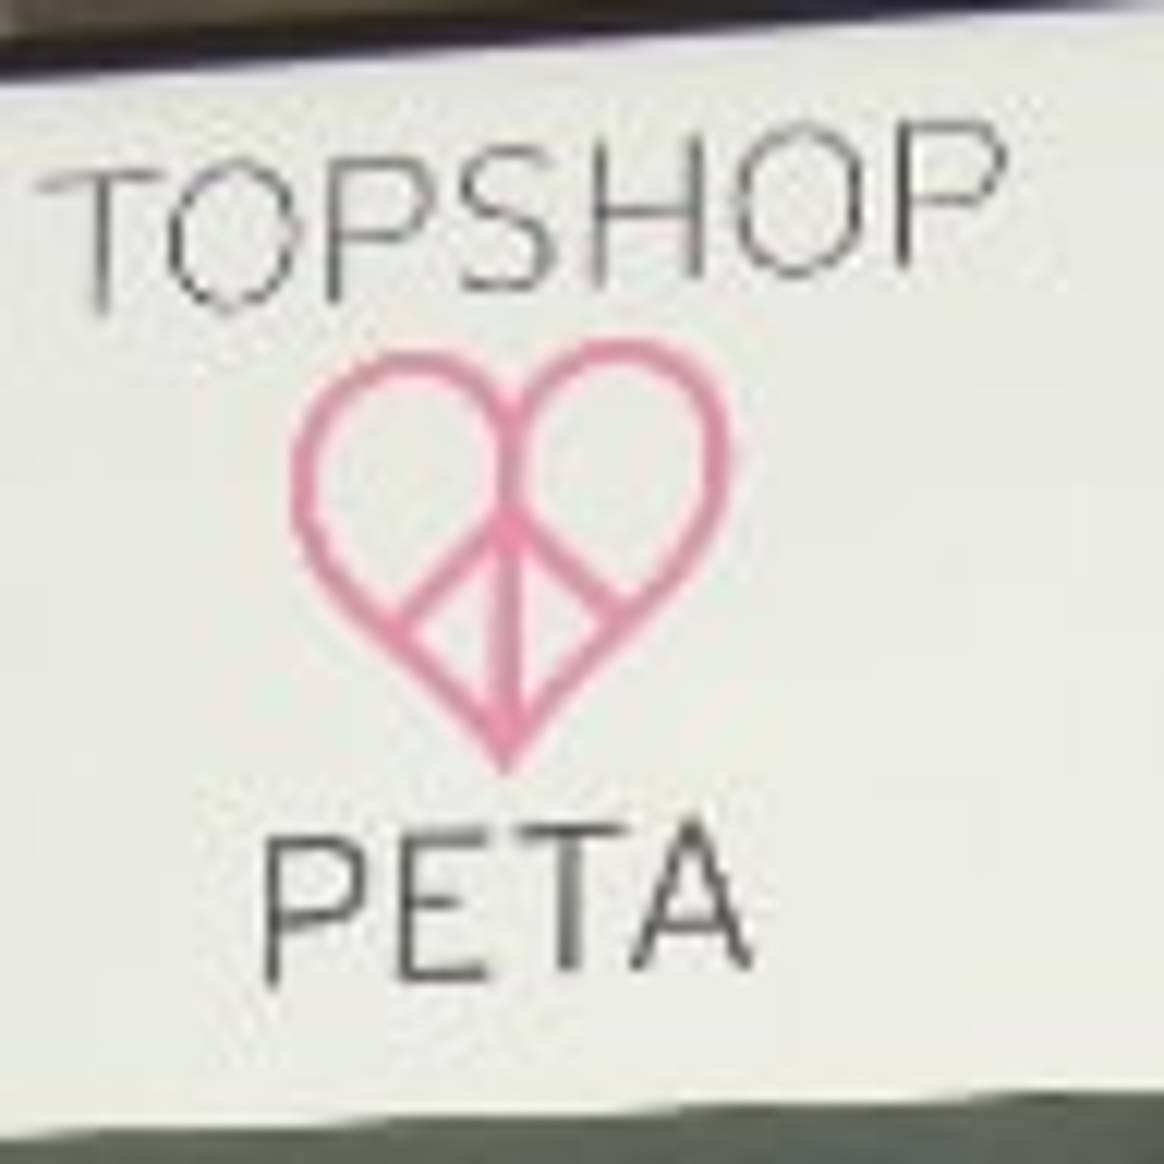 Topshop teams up with PETA